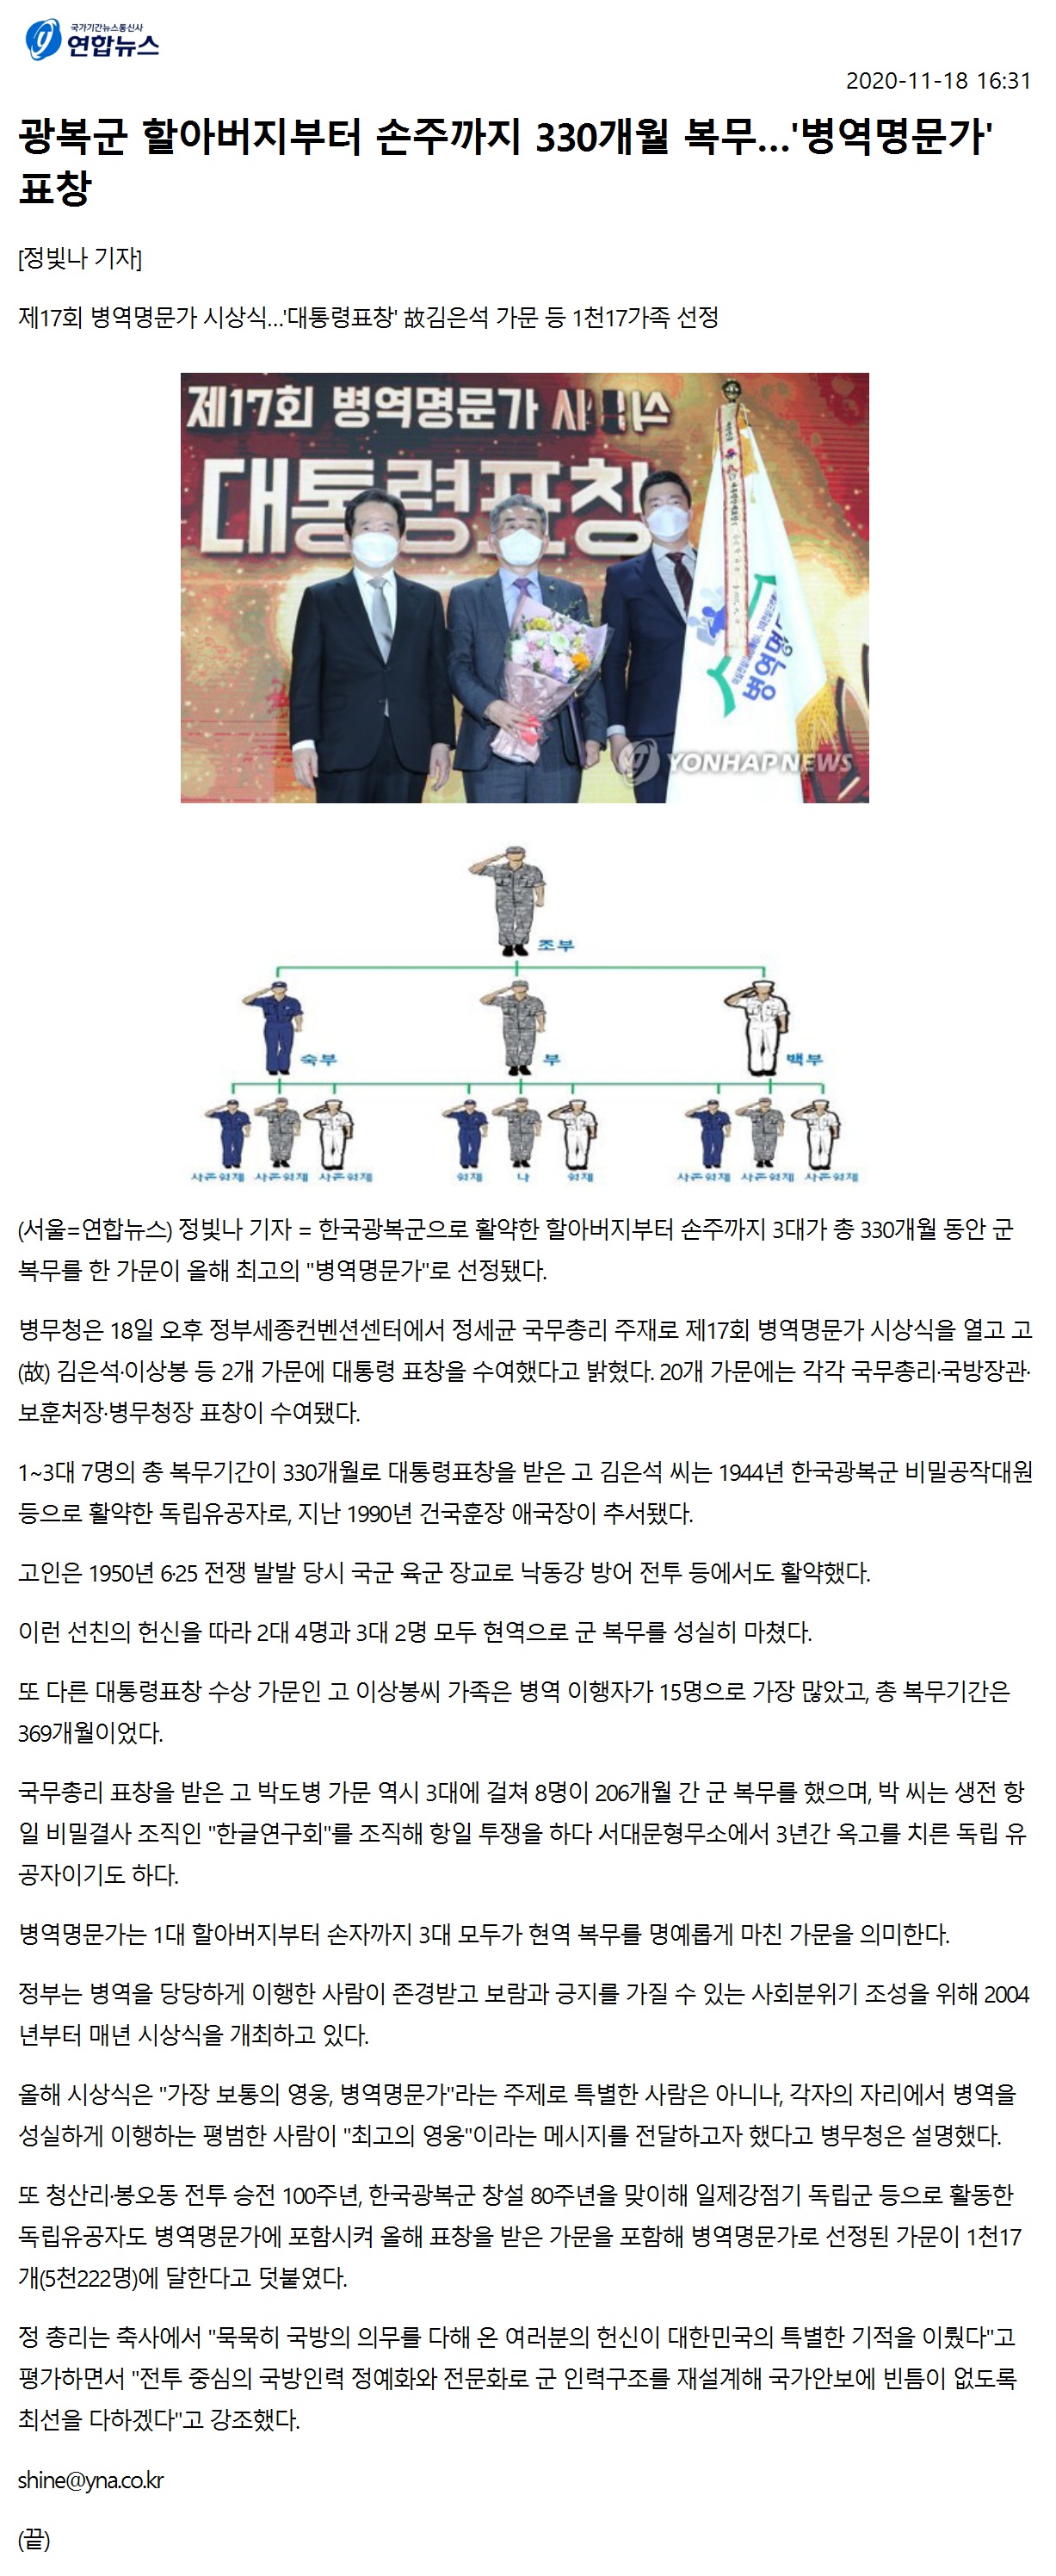 연합뉴스_광복군 할아버지부터 손주까지 330개월 복무…'병역명문가' 표창1